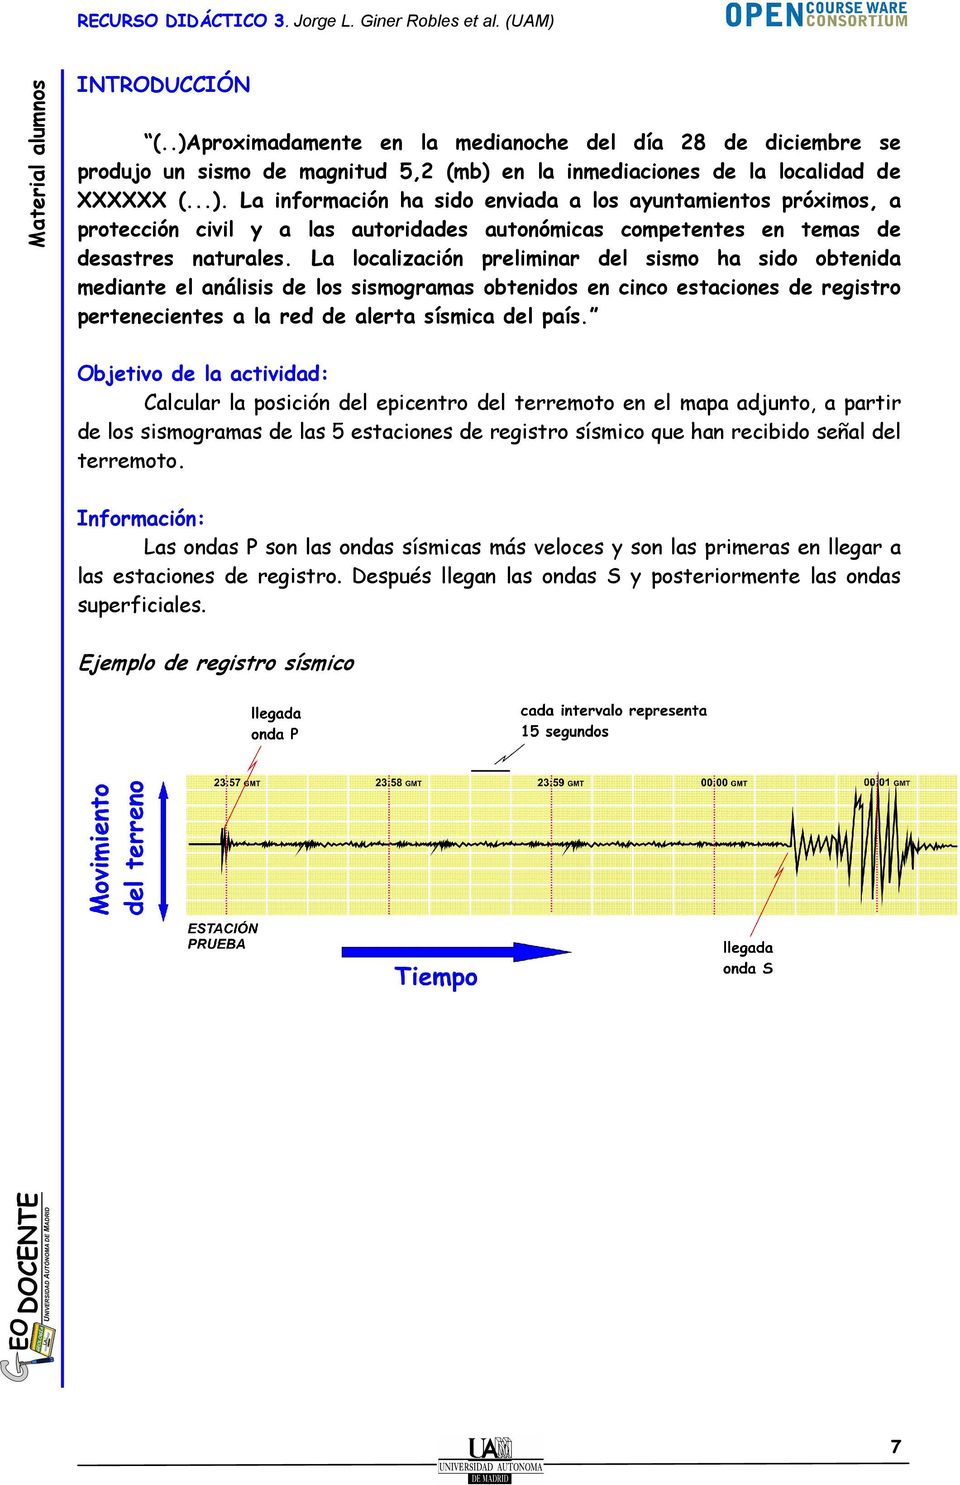 Objetivo de la actividad: Calcular la posición del epicentro del terremoto en el mapa adjunto, a partir de los sismogramas de las 5 estaciones de registro sísmico que han recibido señal del terremoto.